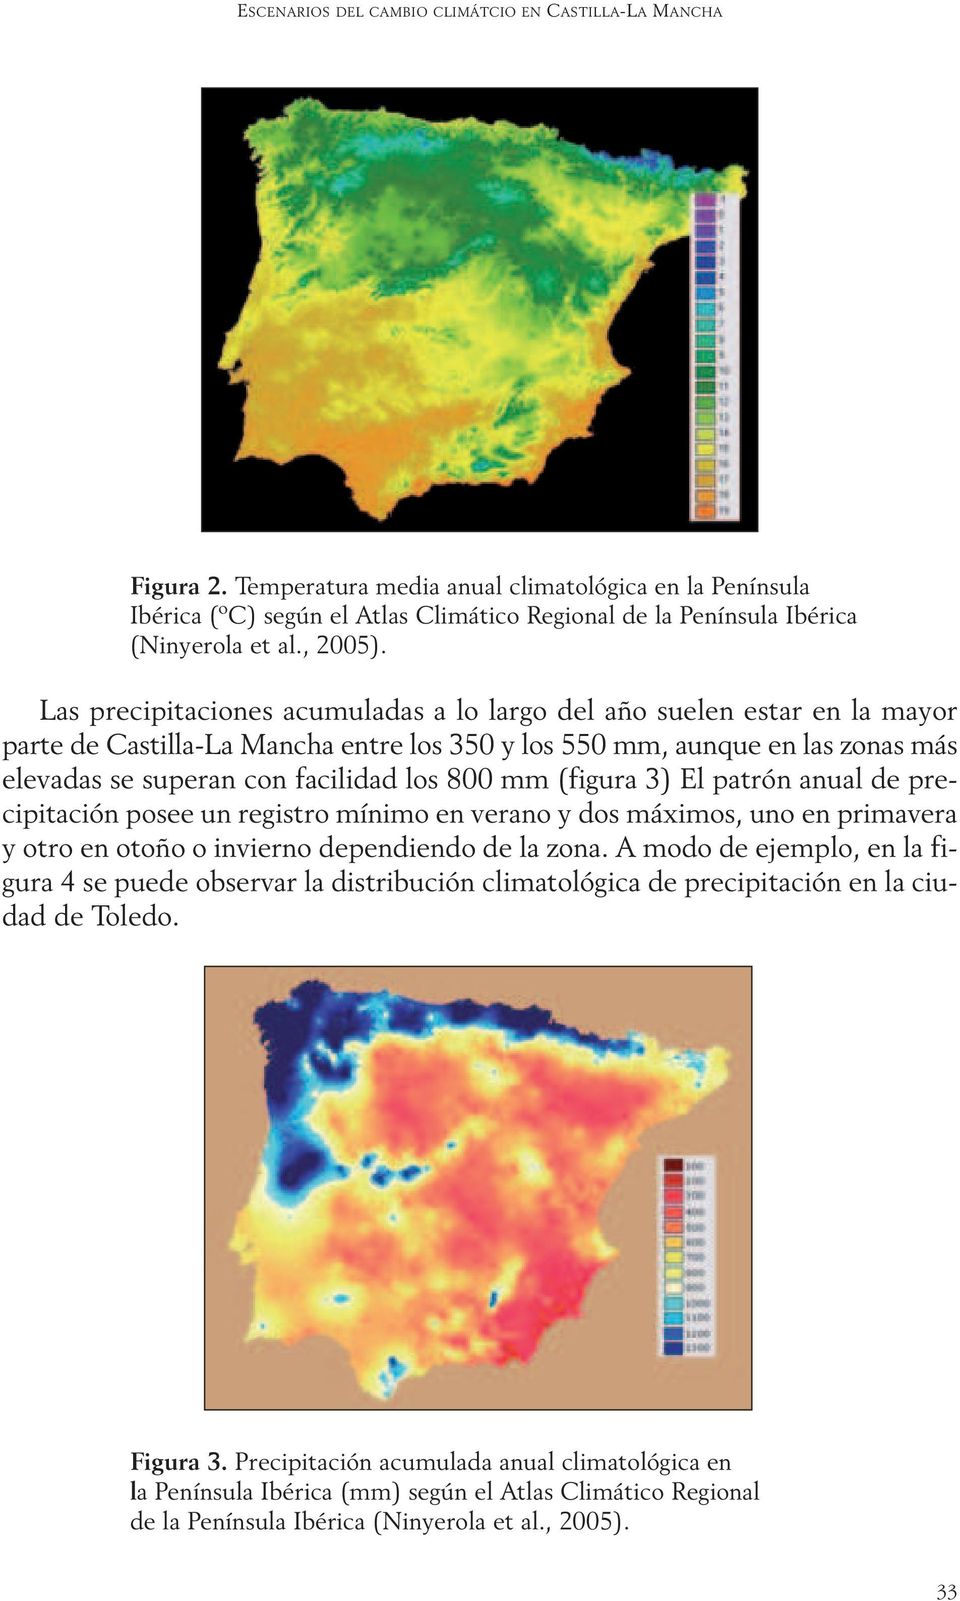 Las precipitaciones acumuladas a lo largo del año suelen estar en la mayor parte de Castilla-La Mancha entre los 350 y los 550 mm, aunque en las zonas más elevadas se superan con facilidad los 800 mm